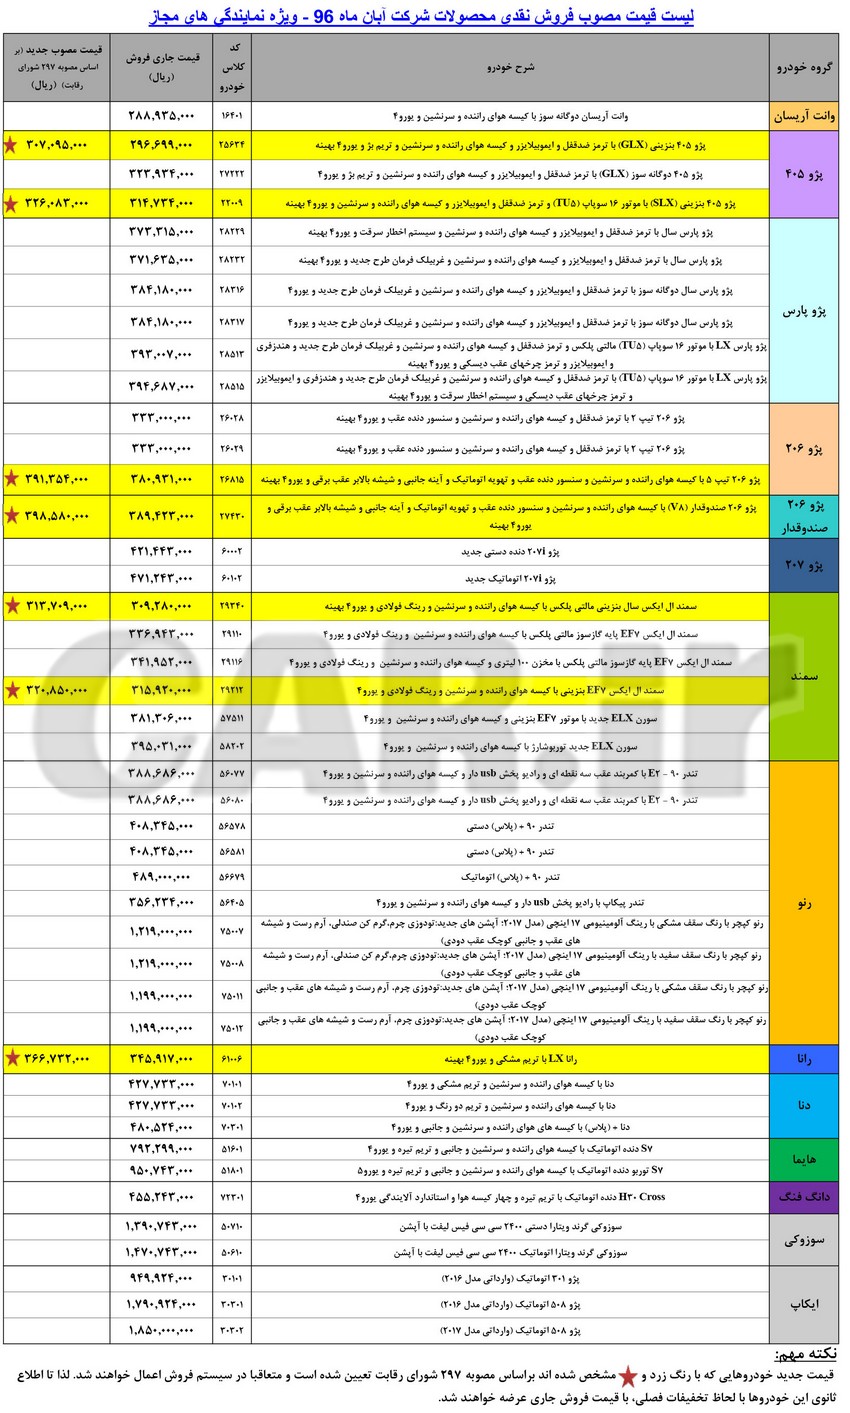  قیمت کارخانه‌ای محصولات ایران خودرو ویژه آبان ماه 96+ جدول 